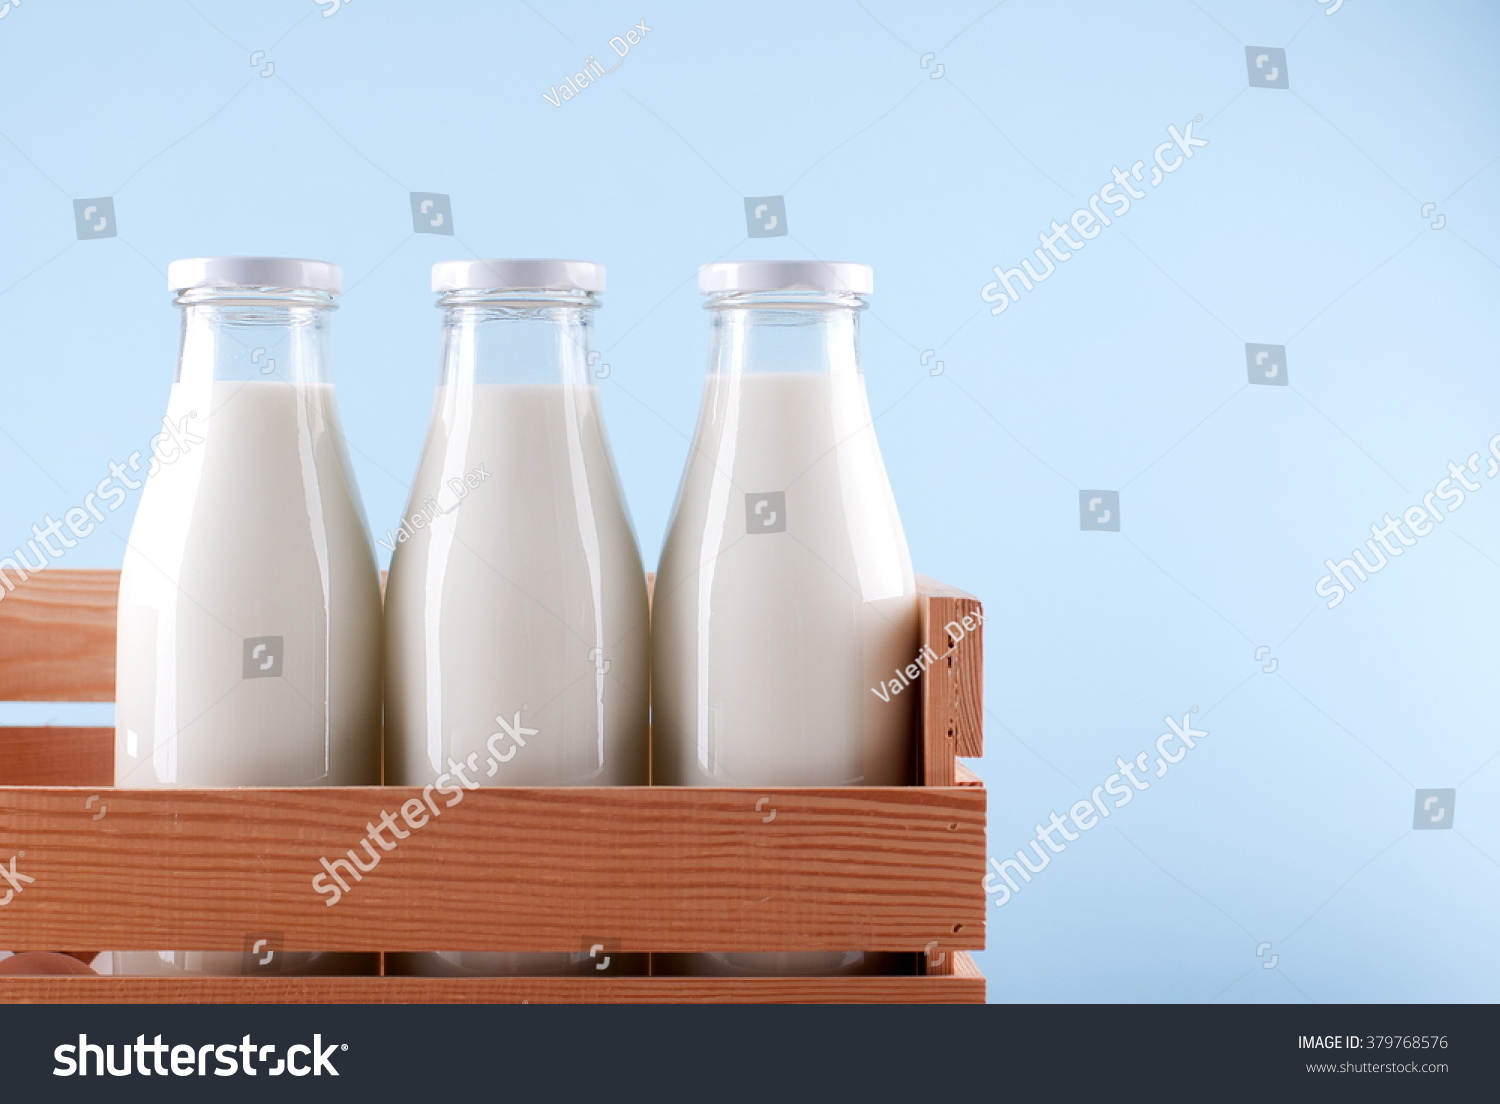 milk bottle in the box #379768576